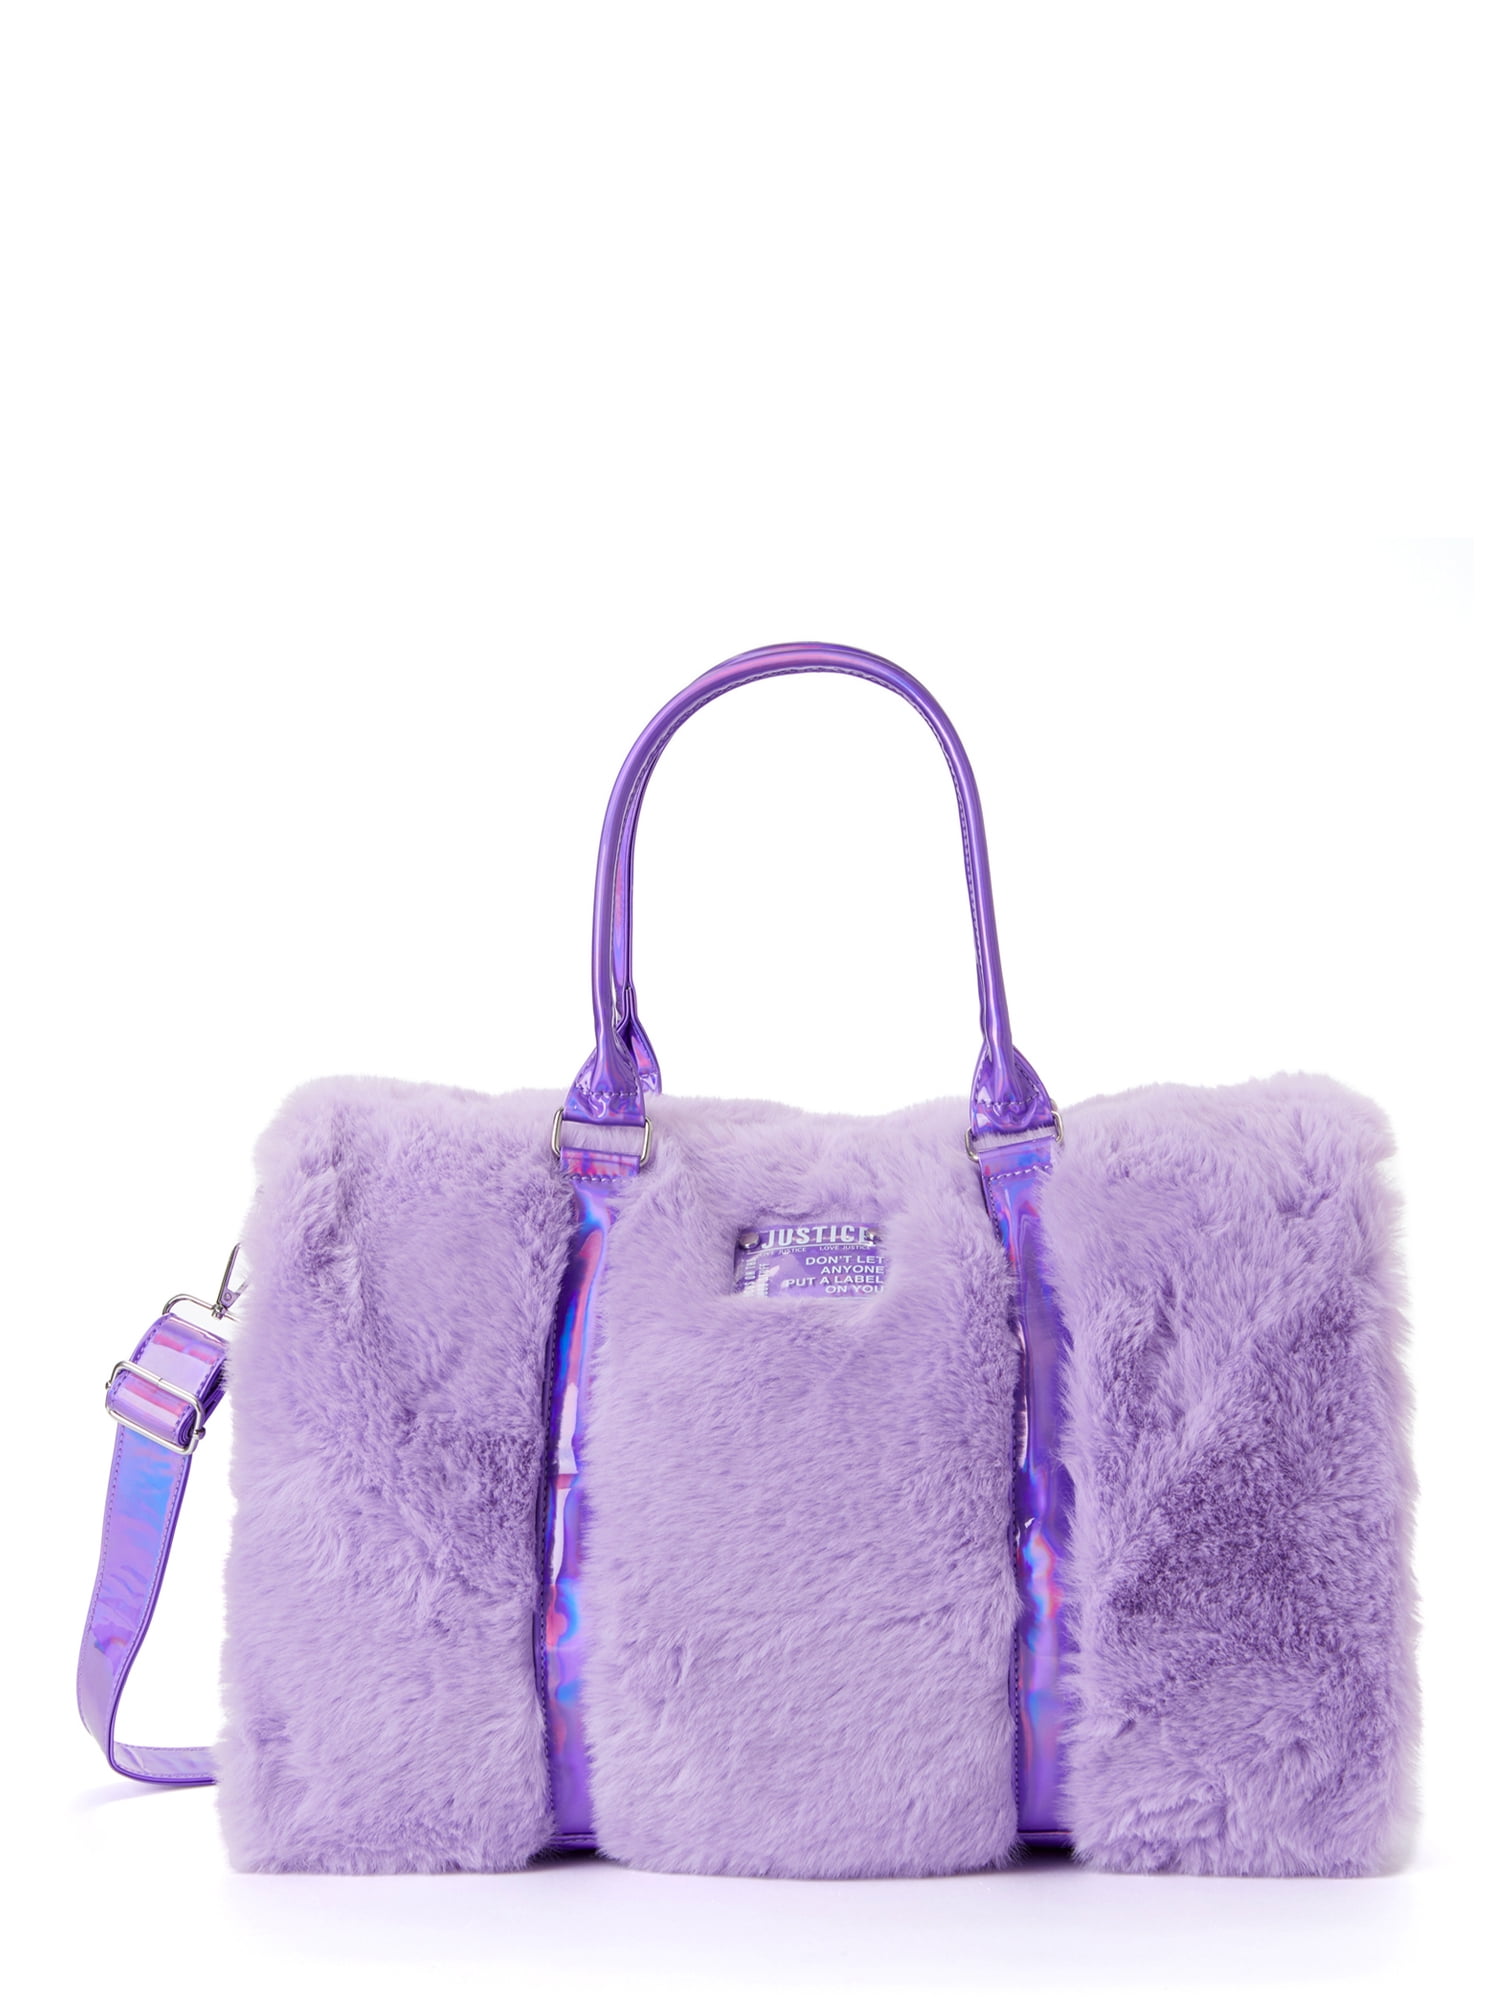 Justice Girls Weekender Duffel Handbag Purple Faux Fur